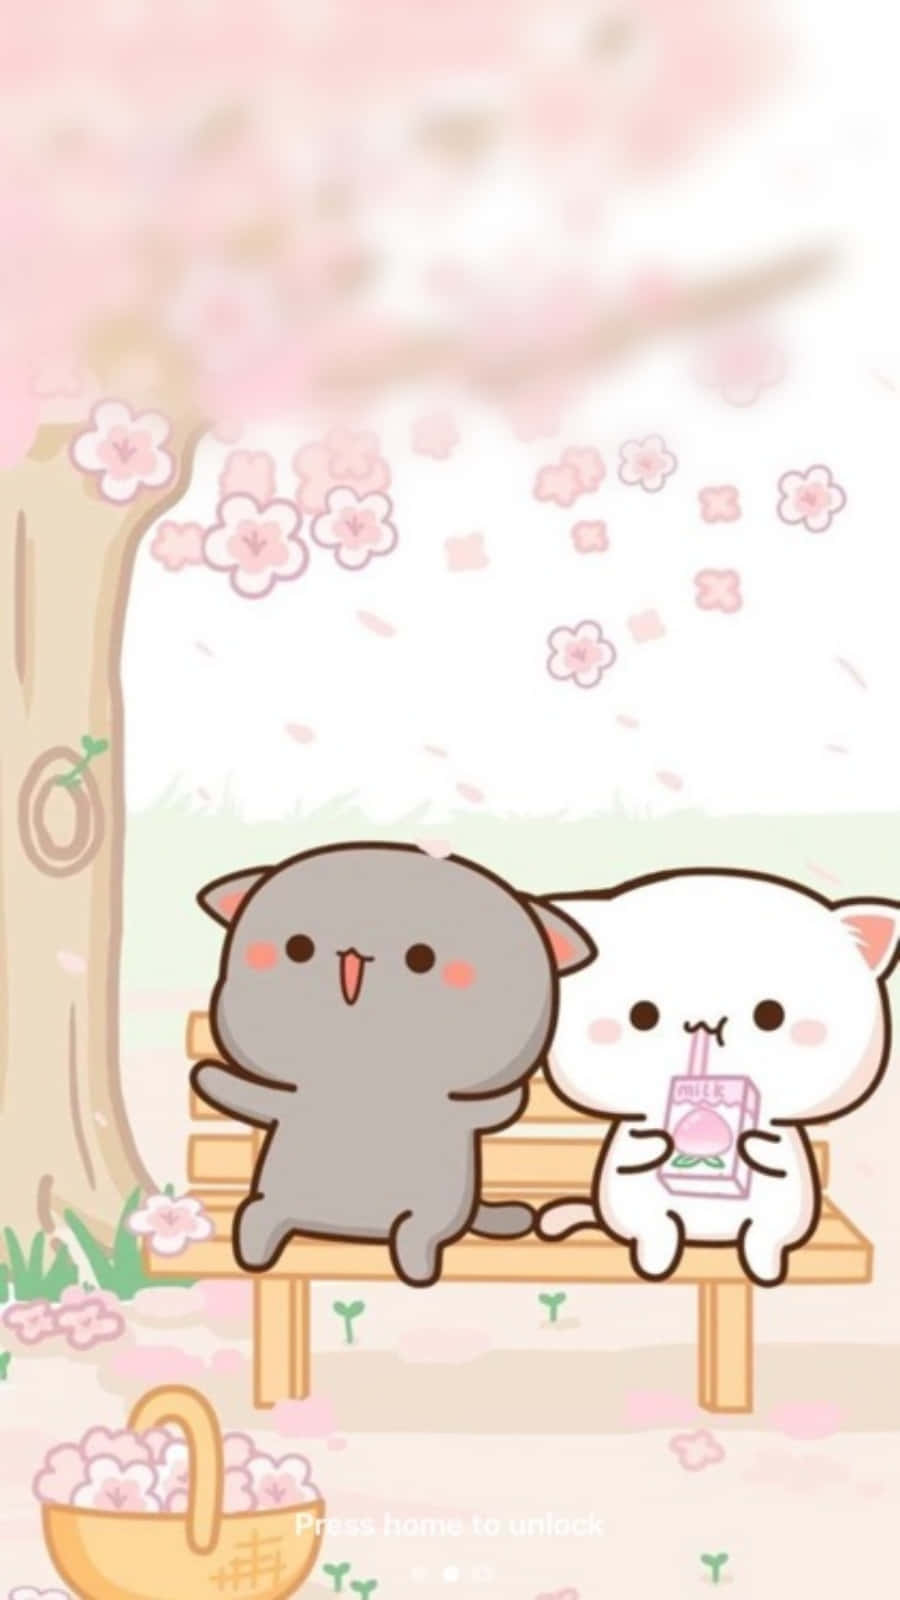 Adorablesgatitos Kawaii Rosados En El Parque. Fondo de pantalla